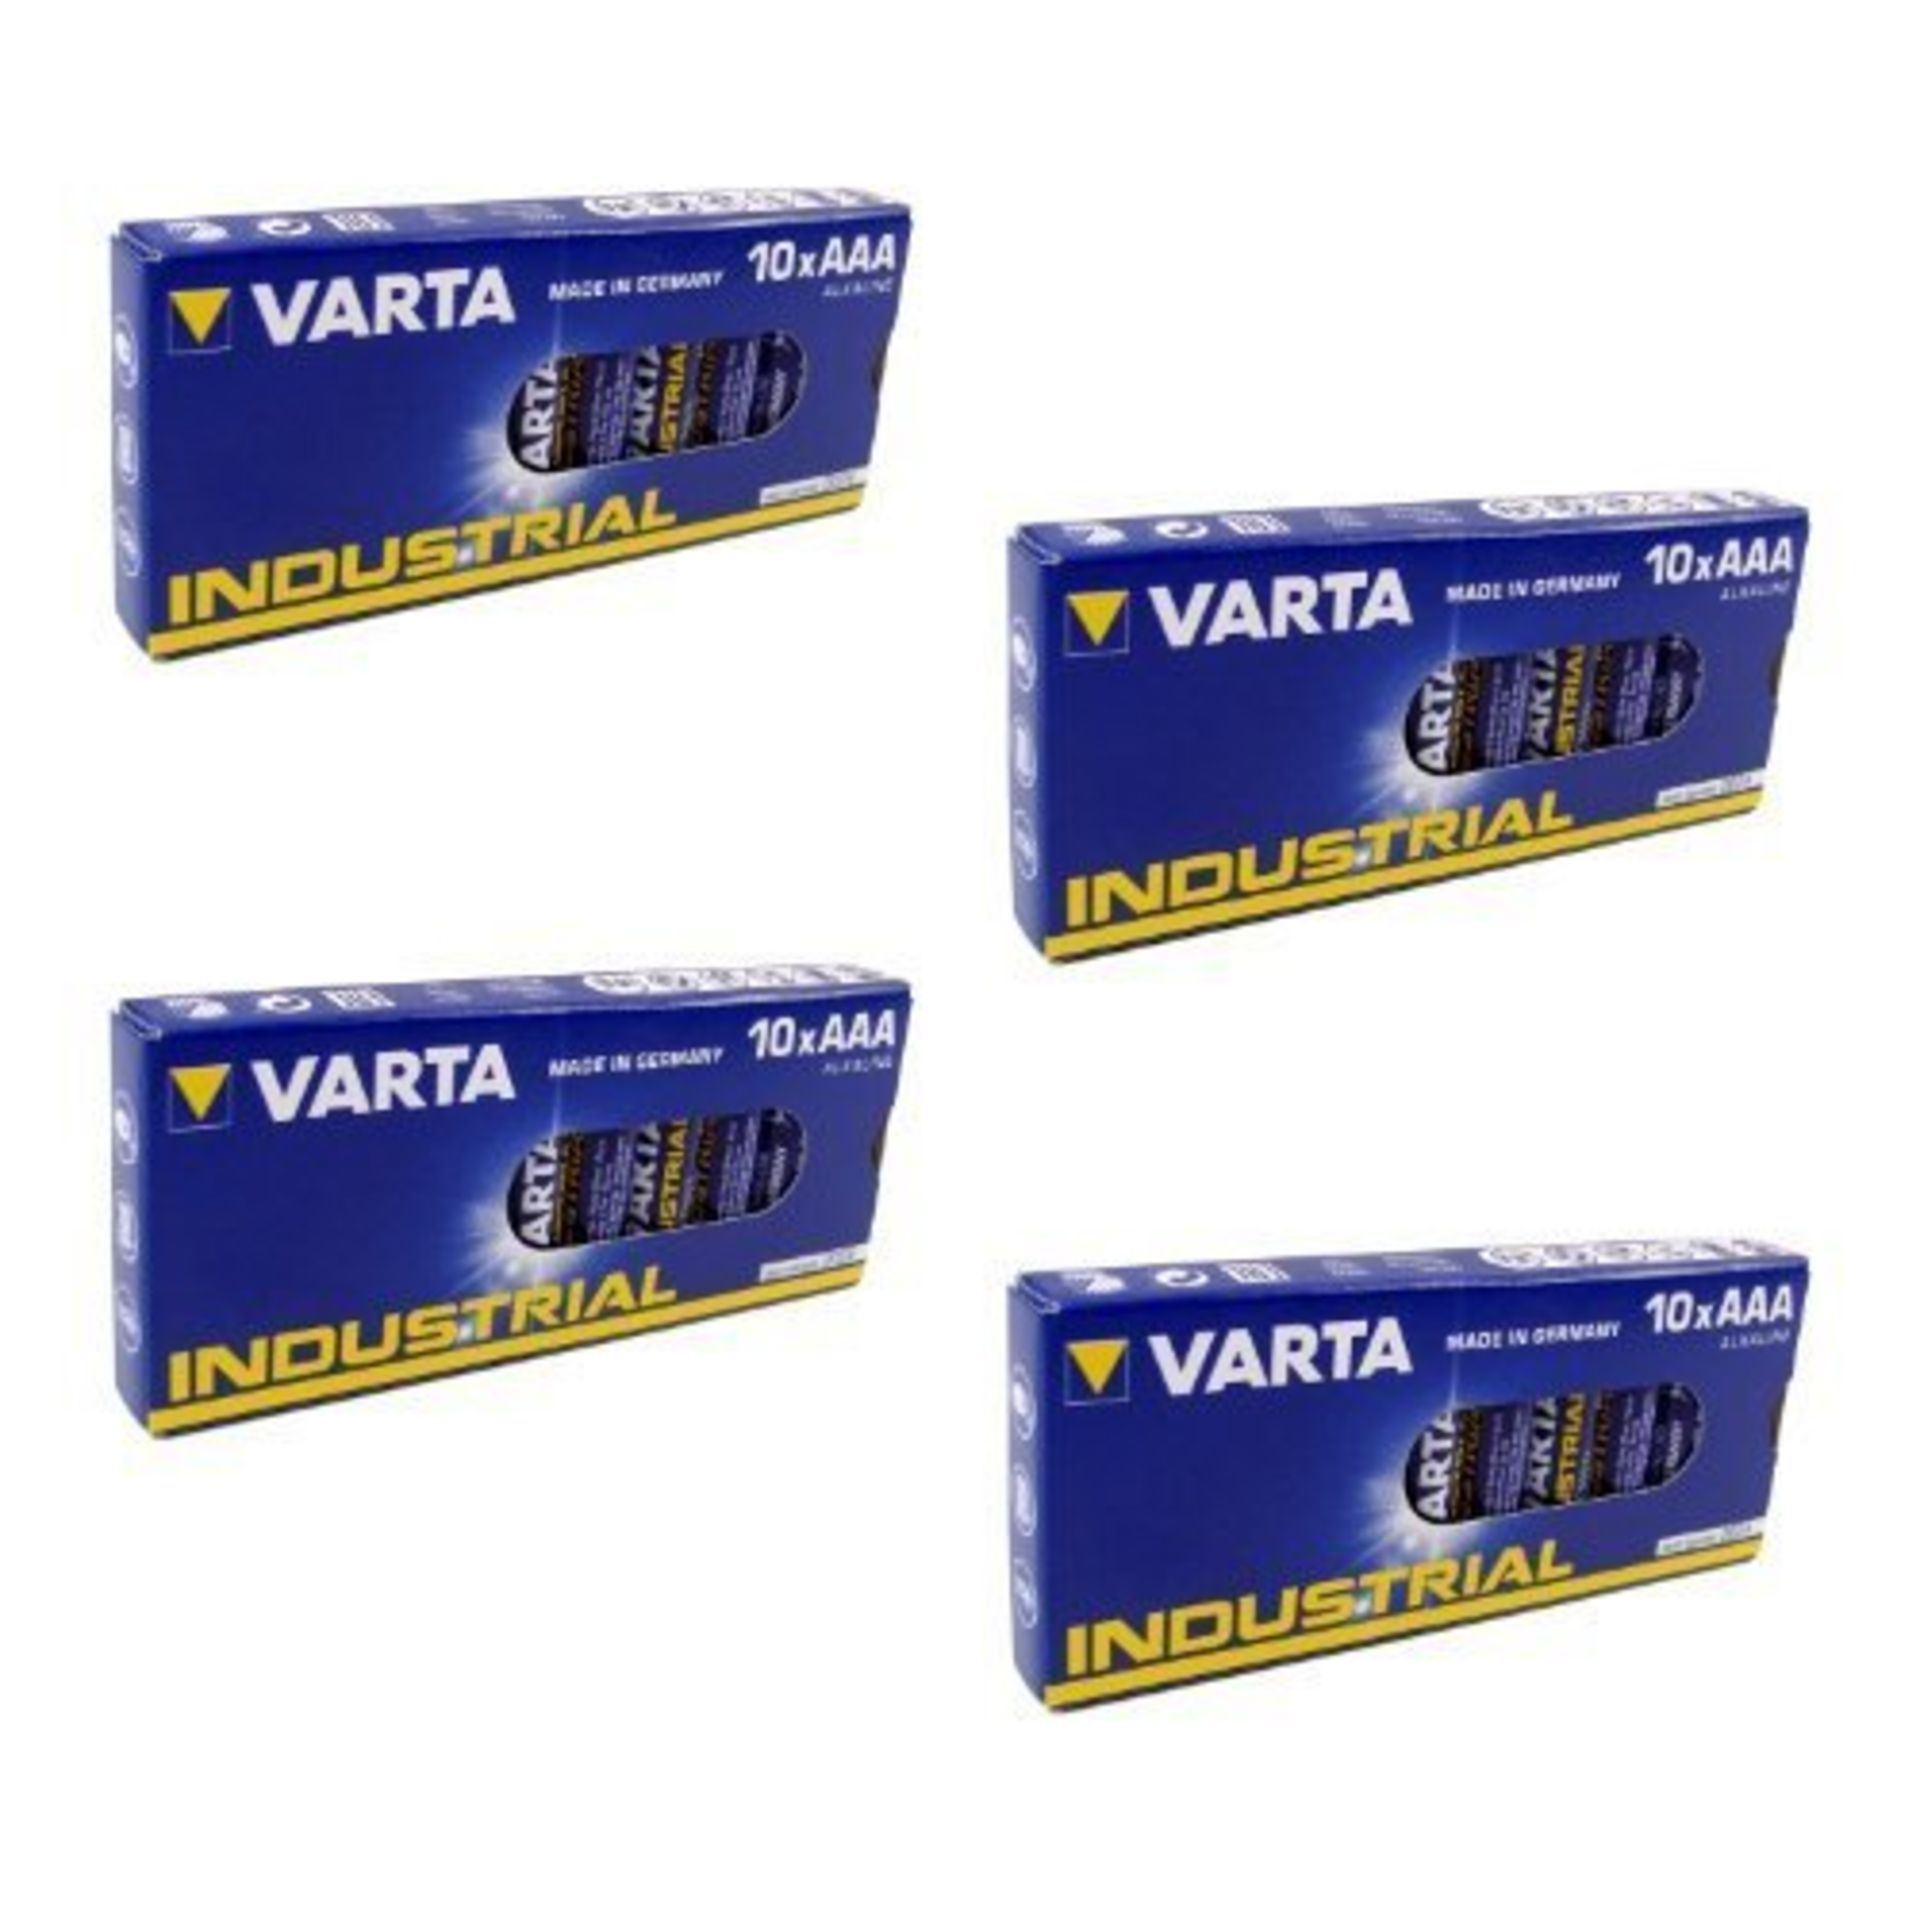 V 200 (Twenty Packs Of Ten) Varta Industrial Alkaline AAA Batteries (Made In Germany)